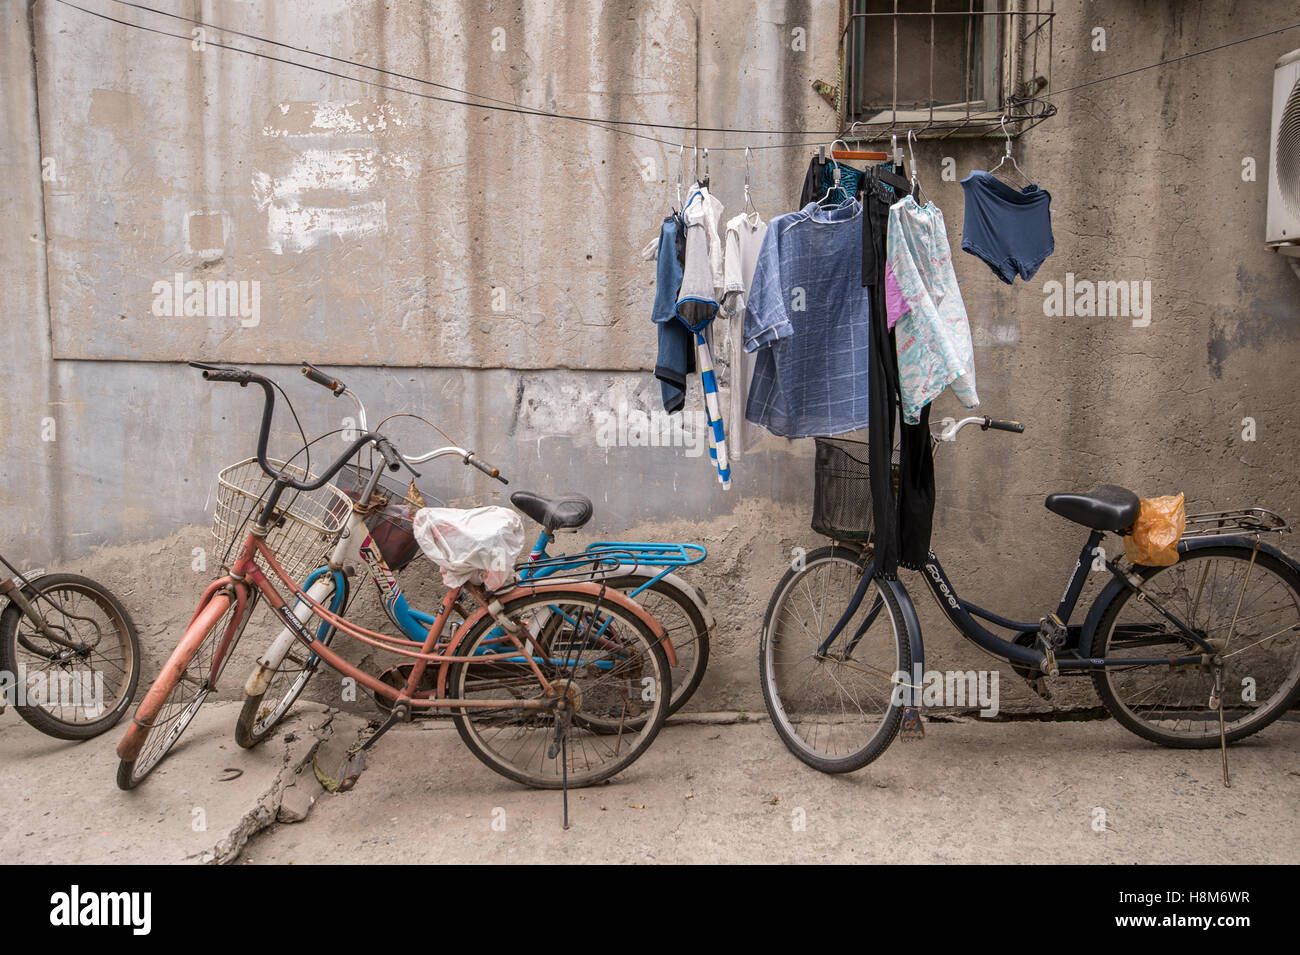 Pechino, Cina - Biciclette parcheggiate e panni appesi ad asciugare al di fuori di una piccola casa in un hutong situato nel centro di Pechino. Foto Stock